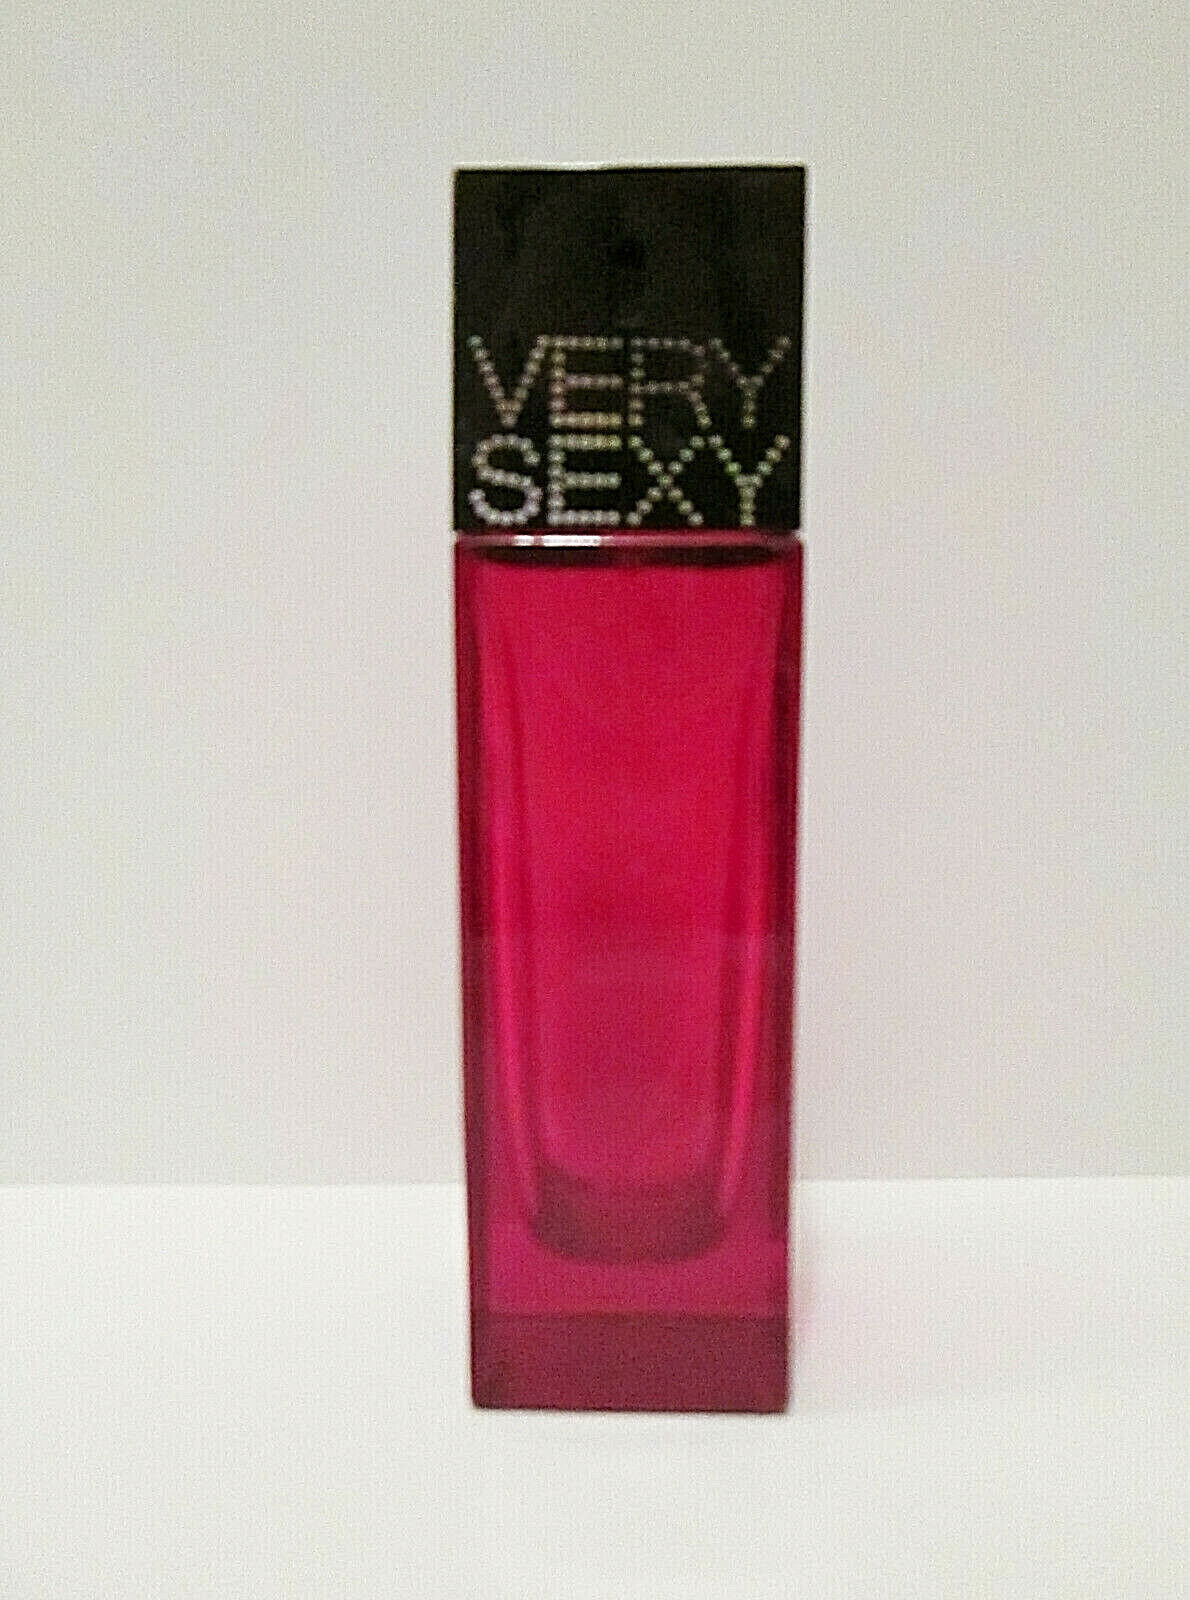 Victoria\'s Secret Very Sexy EMPTY 2.5 oz Eau de Parfum Perfume Bottle Red Black